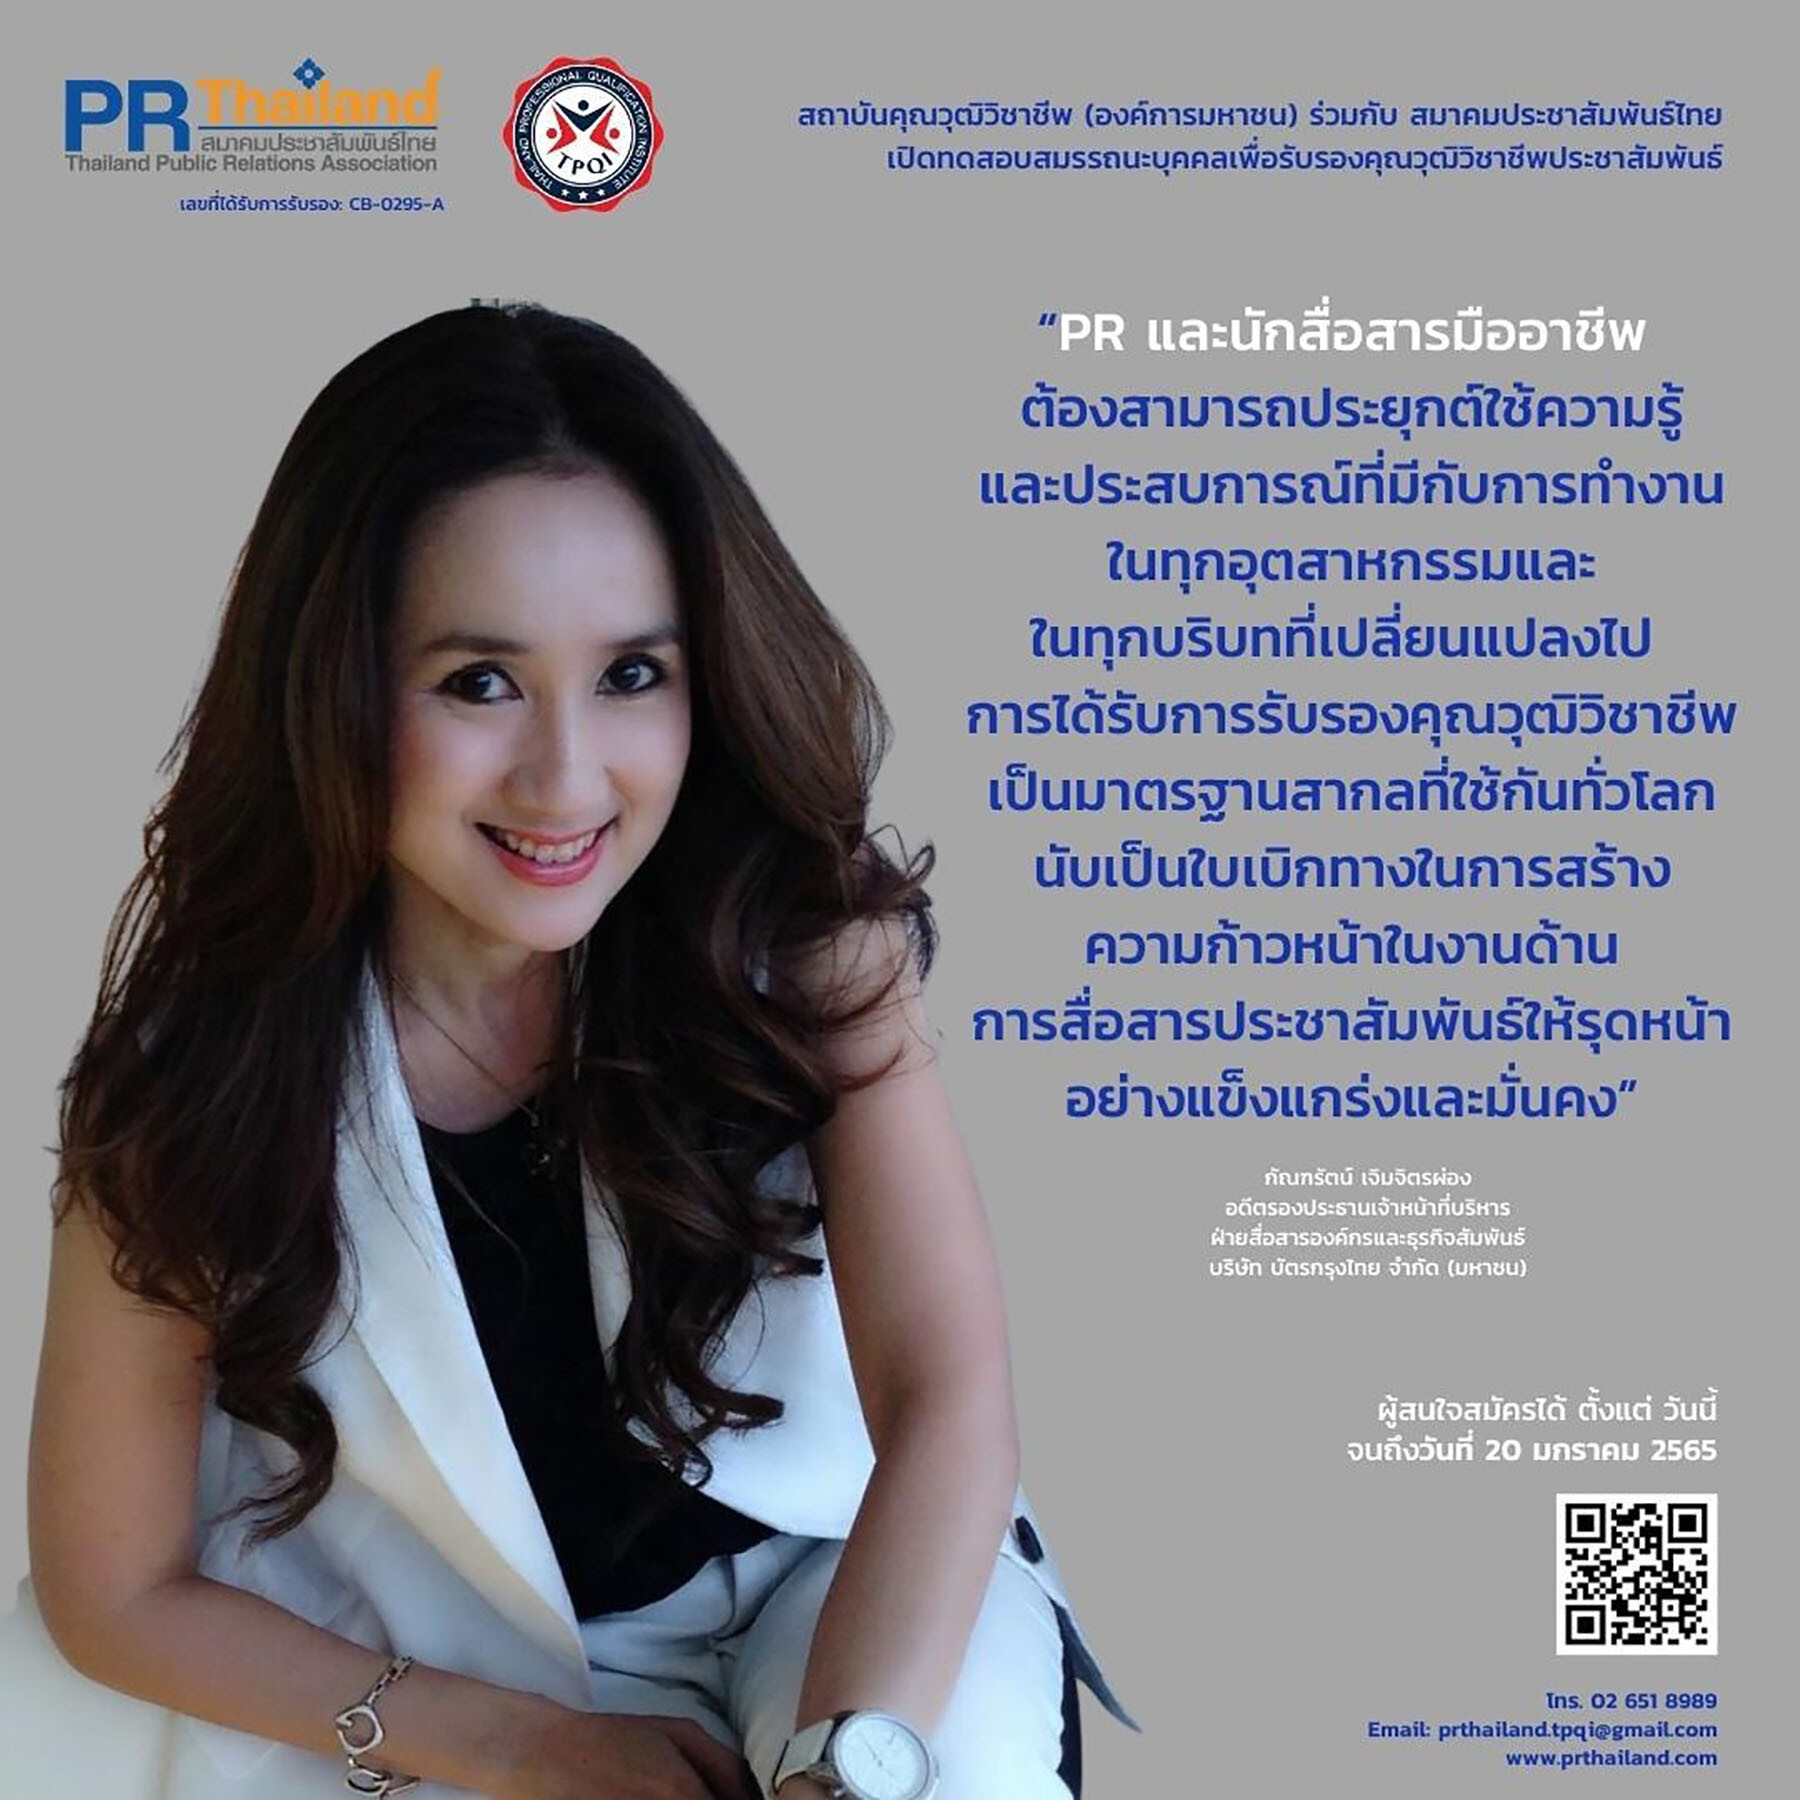 สมาคมประชาสัมพันธ์ไทยเผย PR นักสื่อสารรุ่นใหม่ ให้การตอบรับดีมาก สนใจสมัครเข้ารับการประเมินเพื่อรับรองมาตรฐานคุณวุฒิวิชาชีพประชาสัมพันธ์ รุ่น 1/2565 เปิดถึง 20 ม.ค.นี้